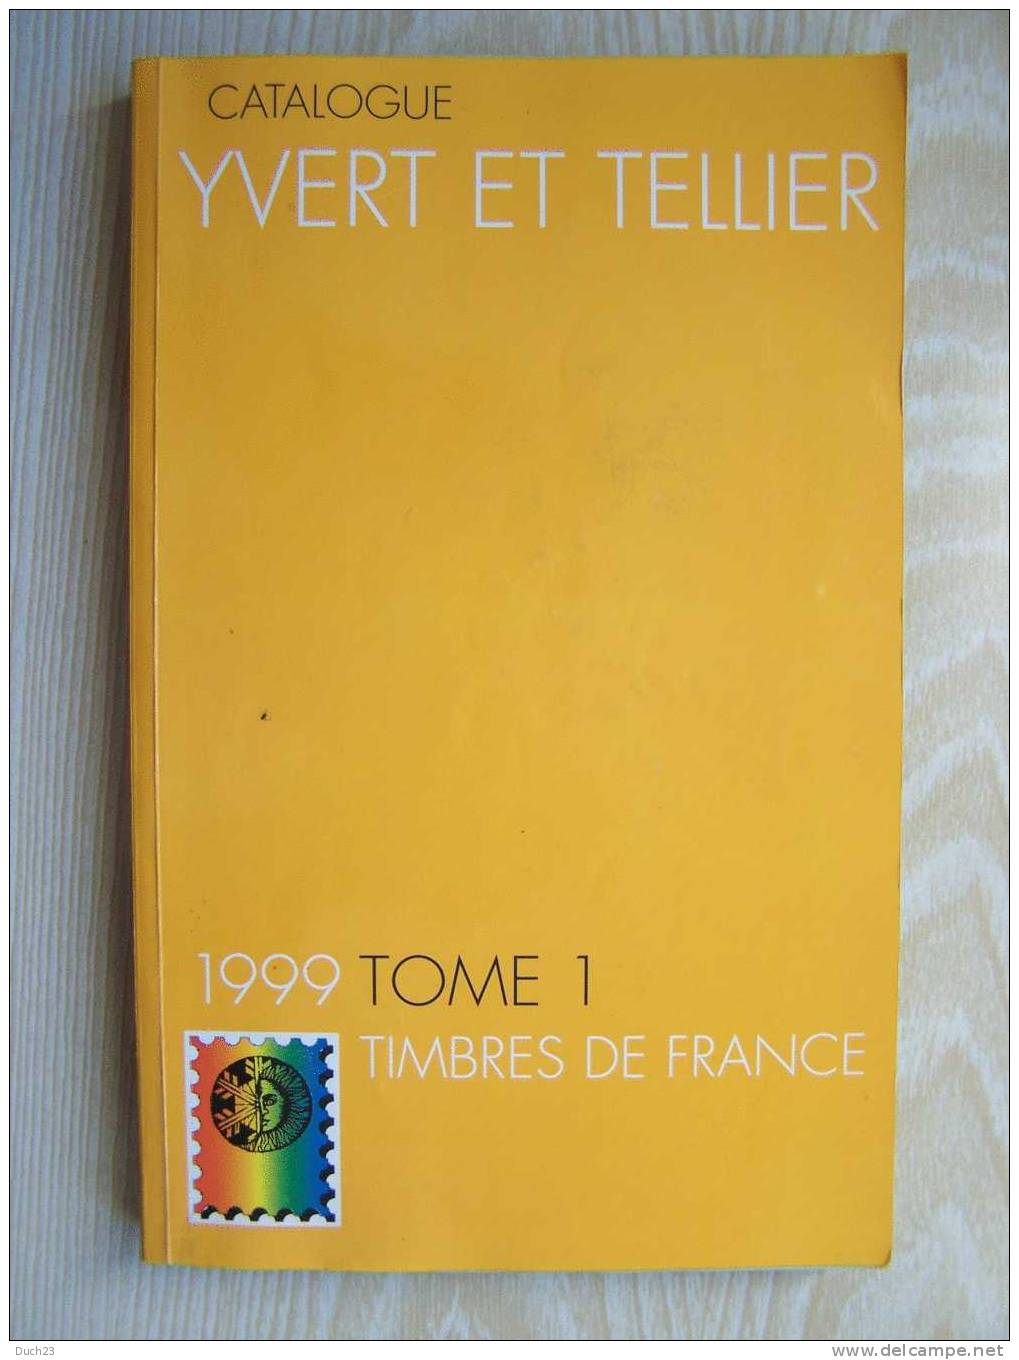 CATALOGUE DE COTATION YVERT ET TELLIER ANNEE 1999 TOME 1  TRES BON ETAT   REF CD - France